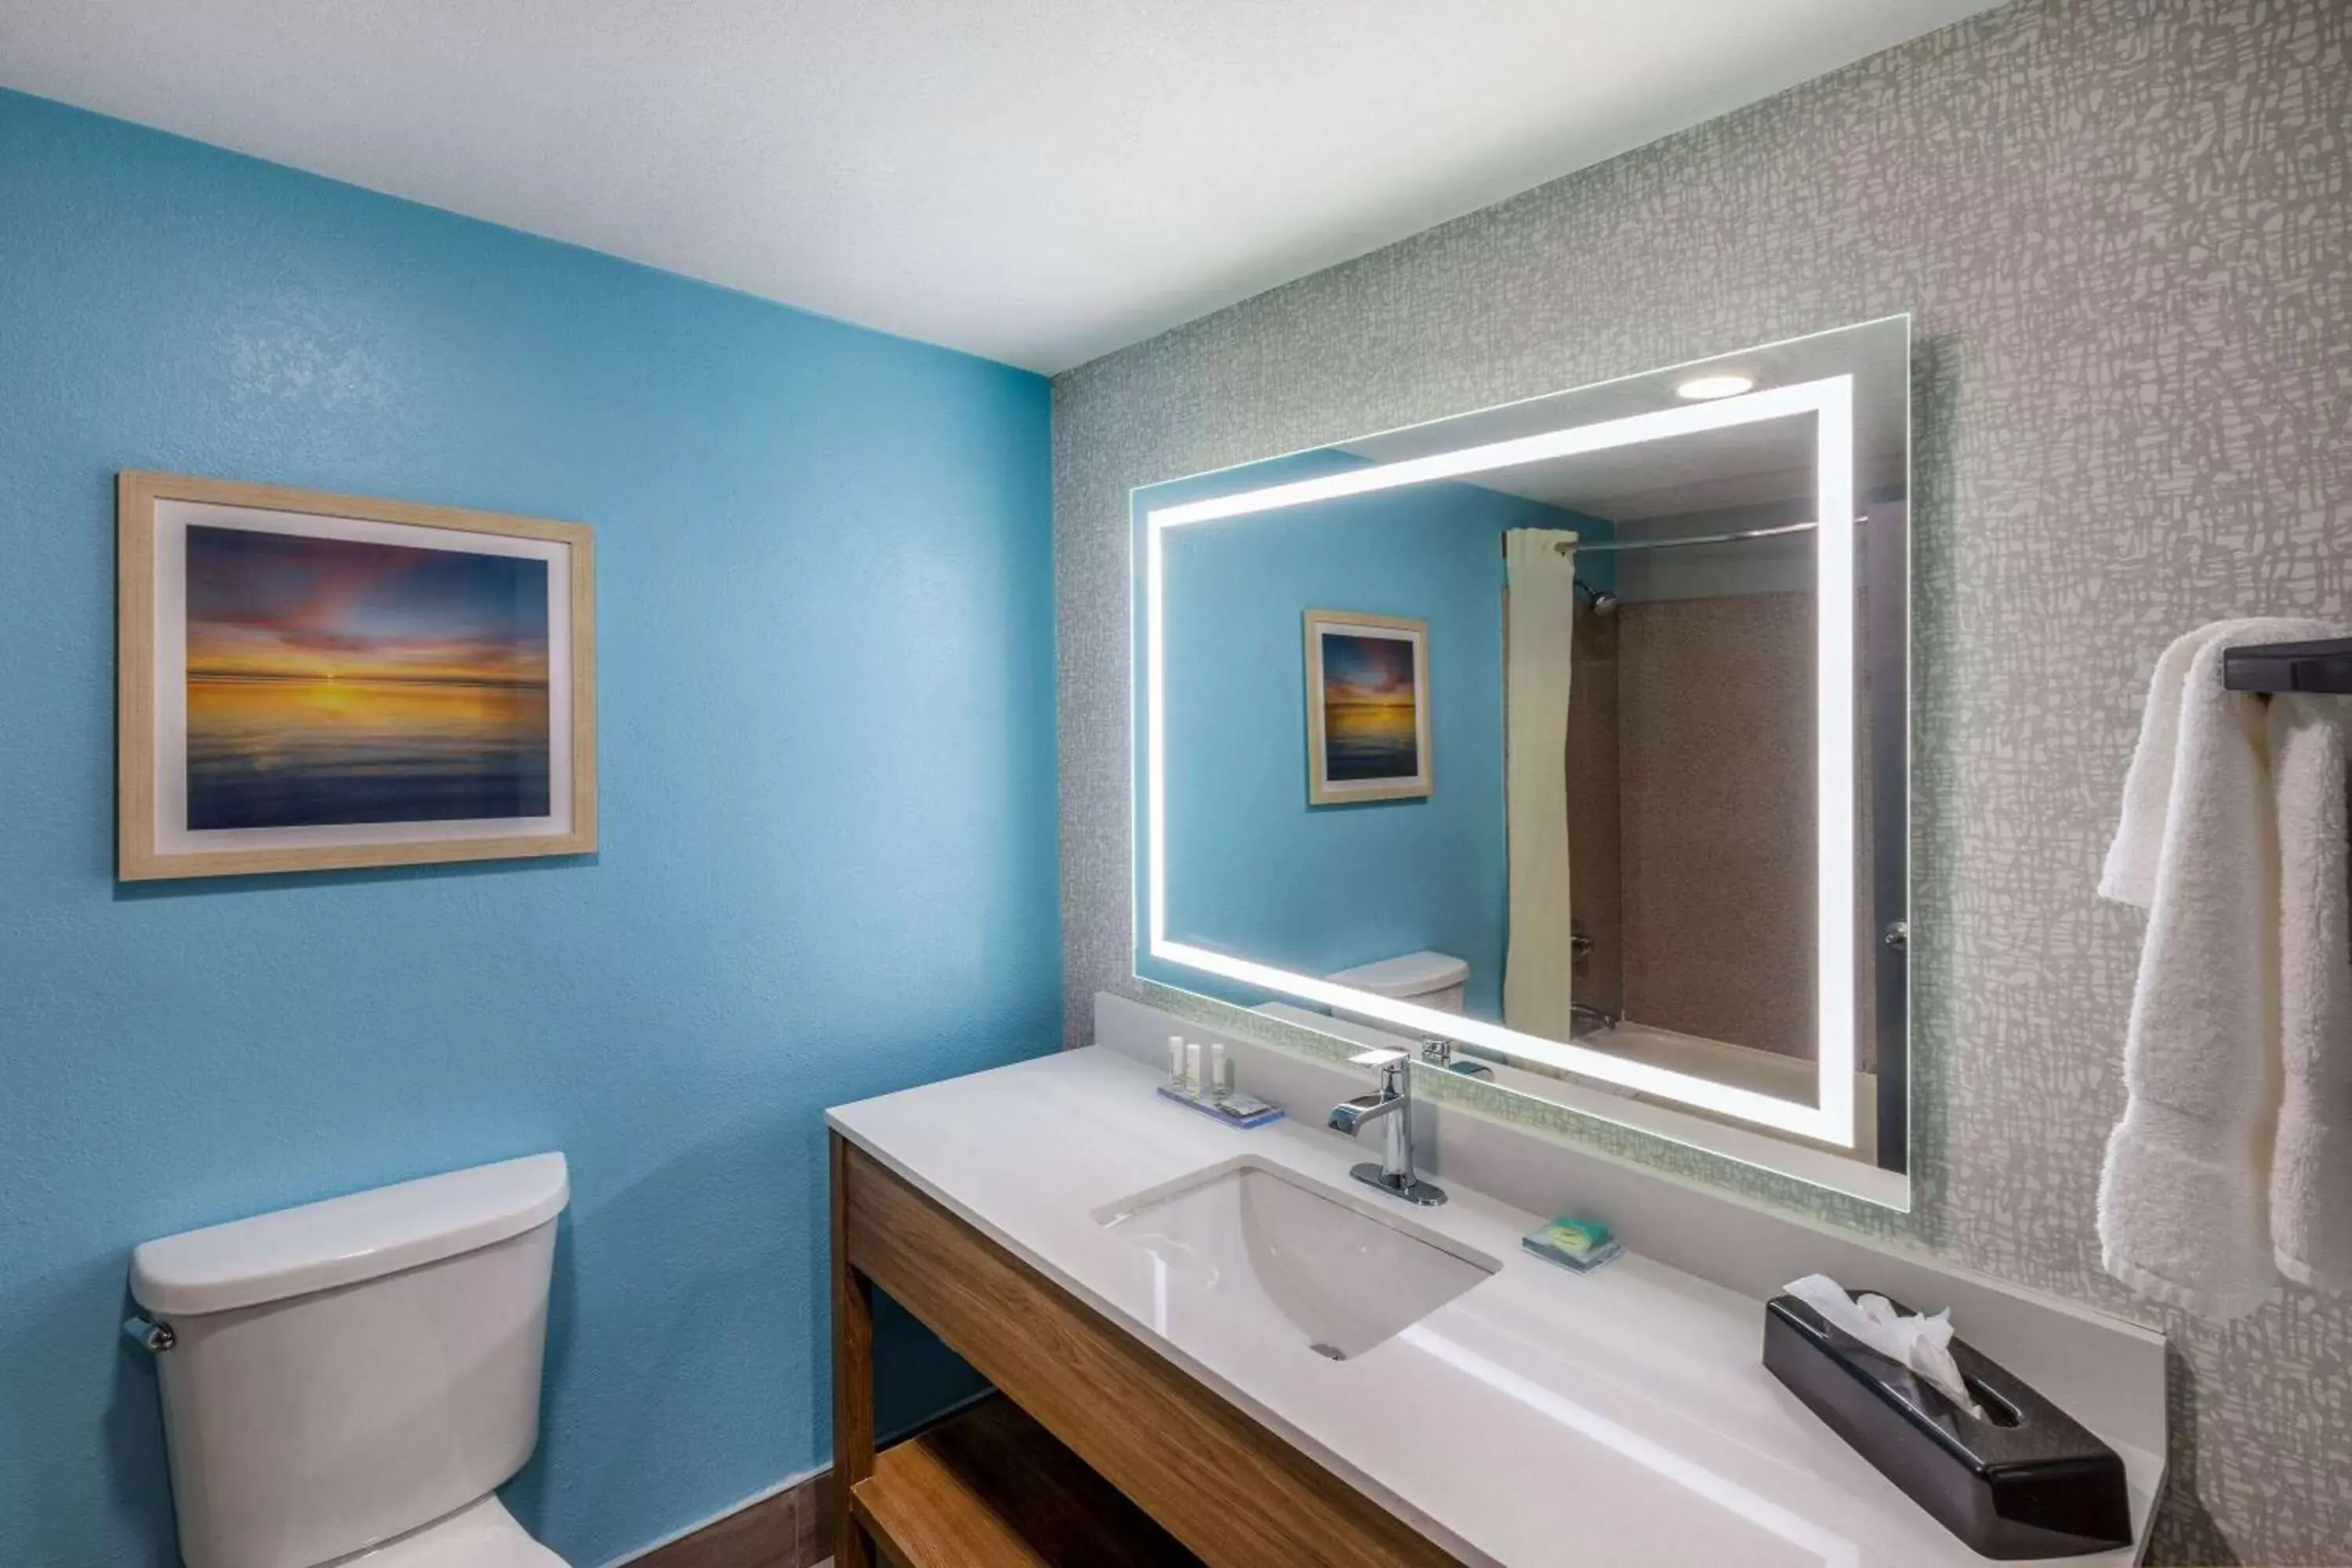 TV and multimedia, Bathroom in La Quinta by Wyndham New Braunfels